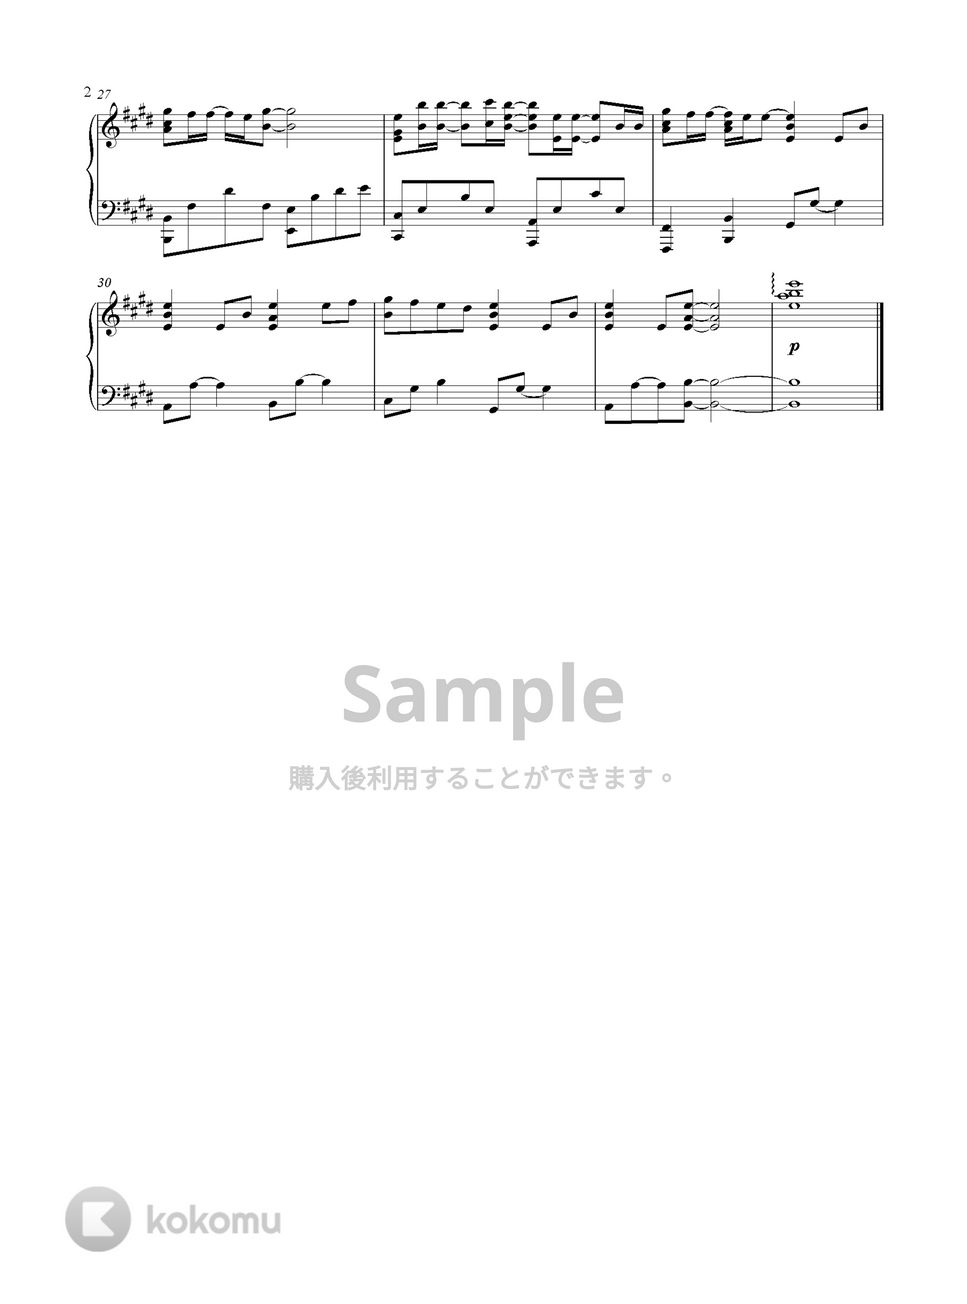 時をかける少女 - 変わらないもの (Piano Version) by GoGoPiano